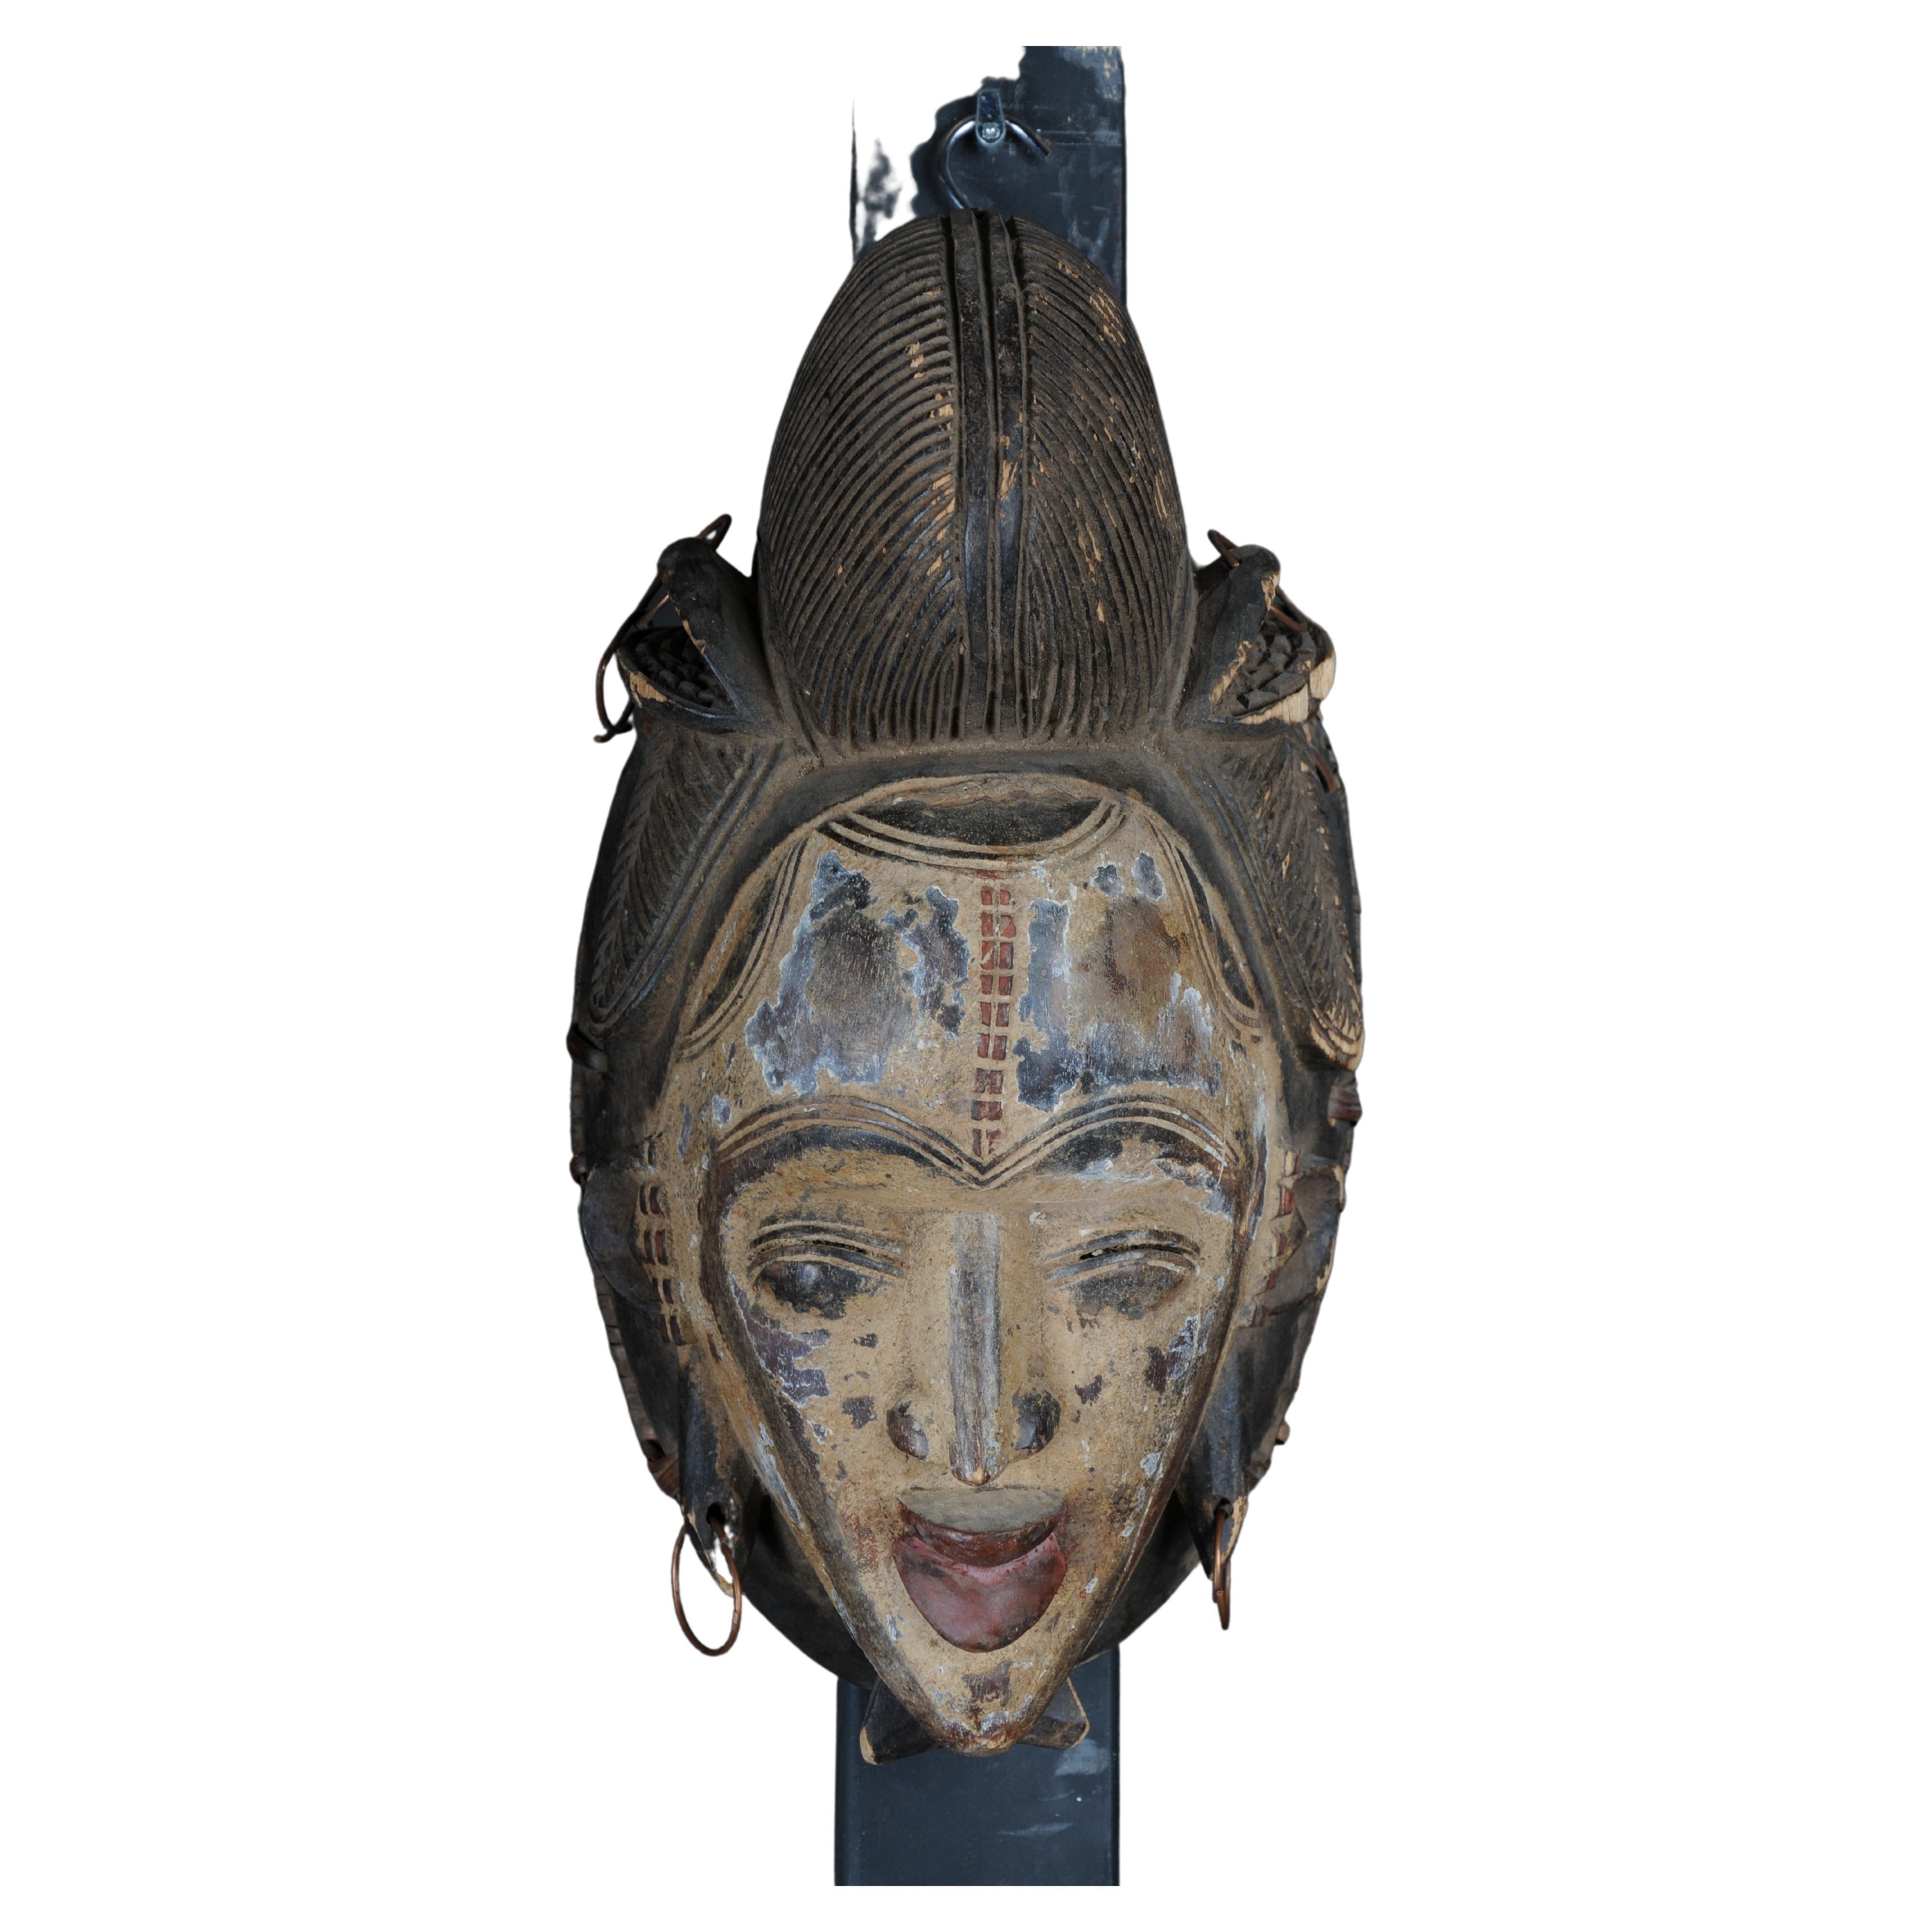 Máscara facial antigua de madera tallada del siglo XX, arte popular africano. Colgable.Decorat